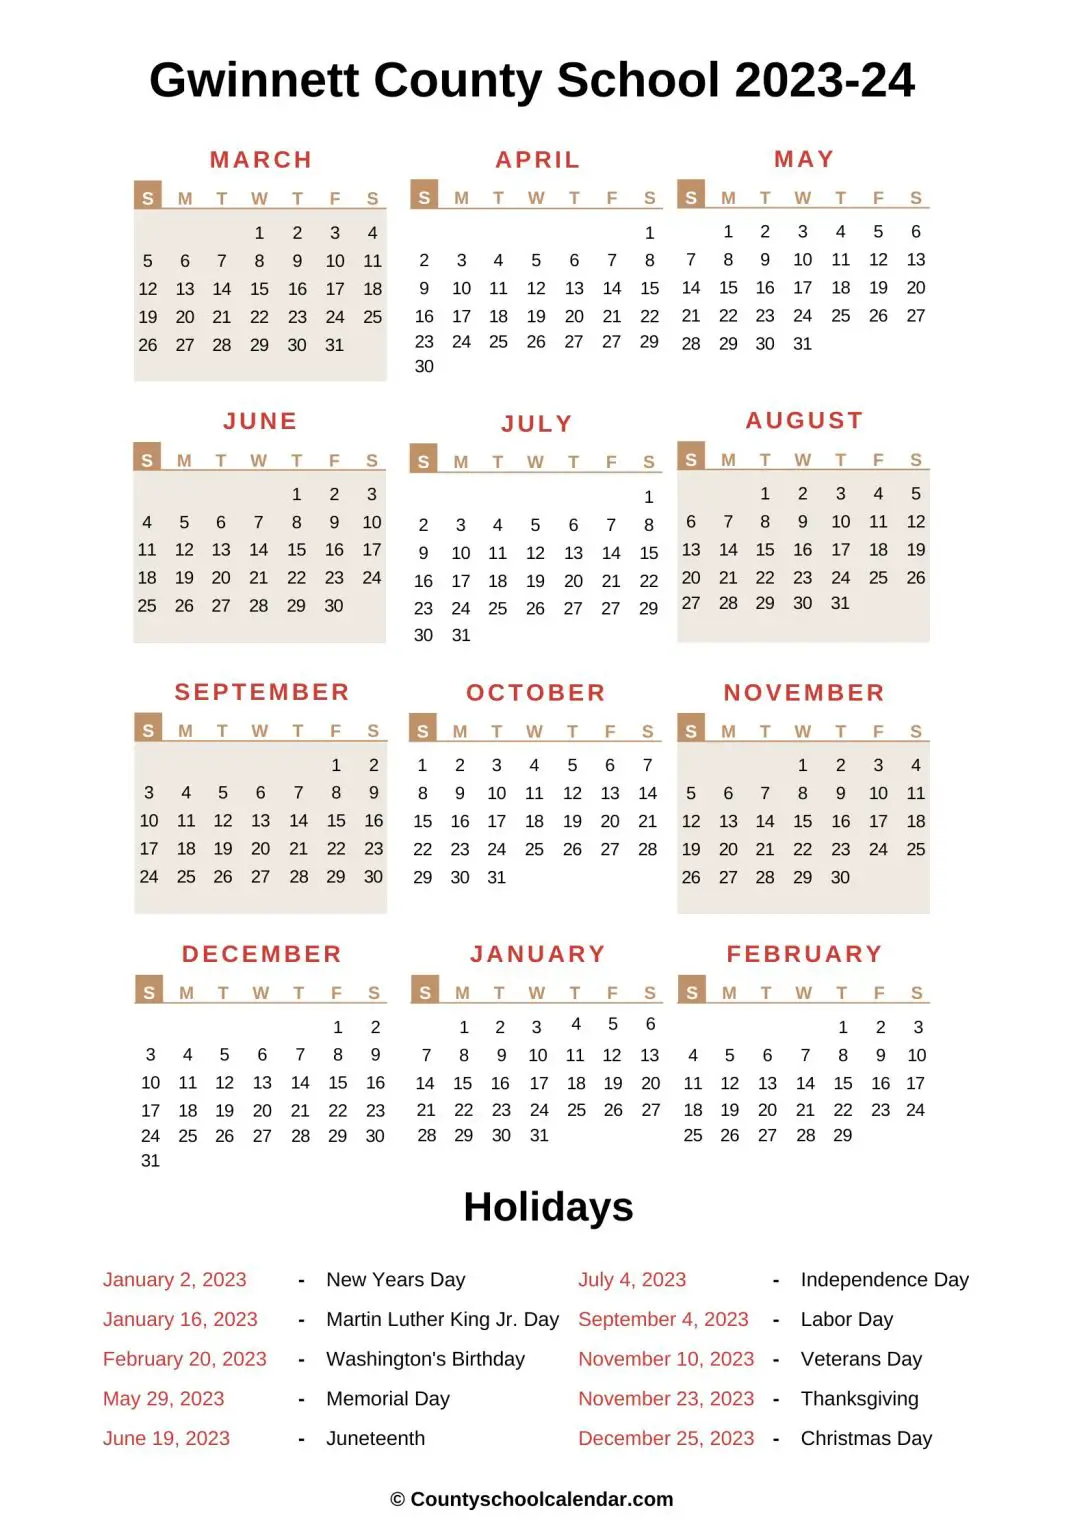 gwinnett-county-school-calendar-2022-2023-with-holidays